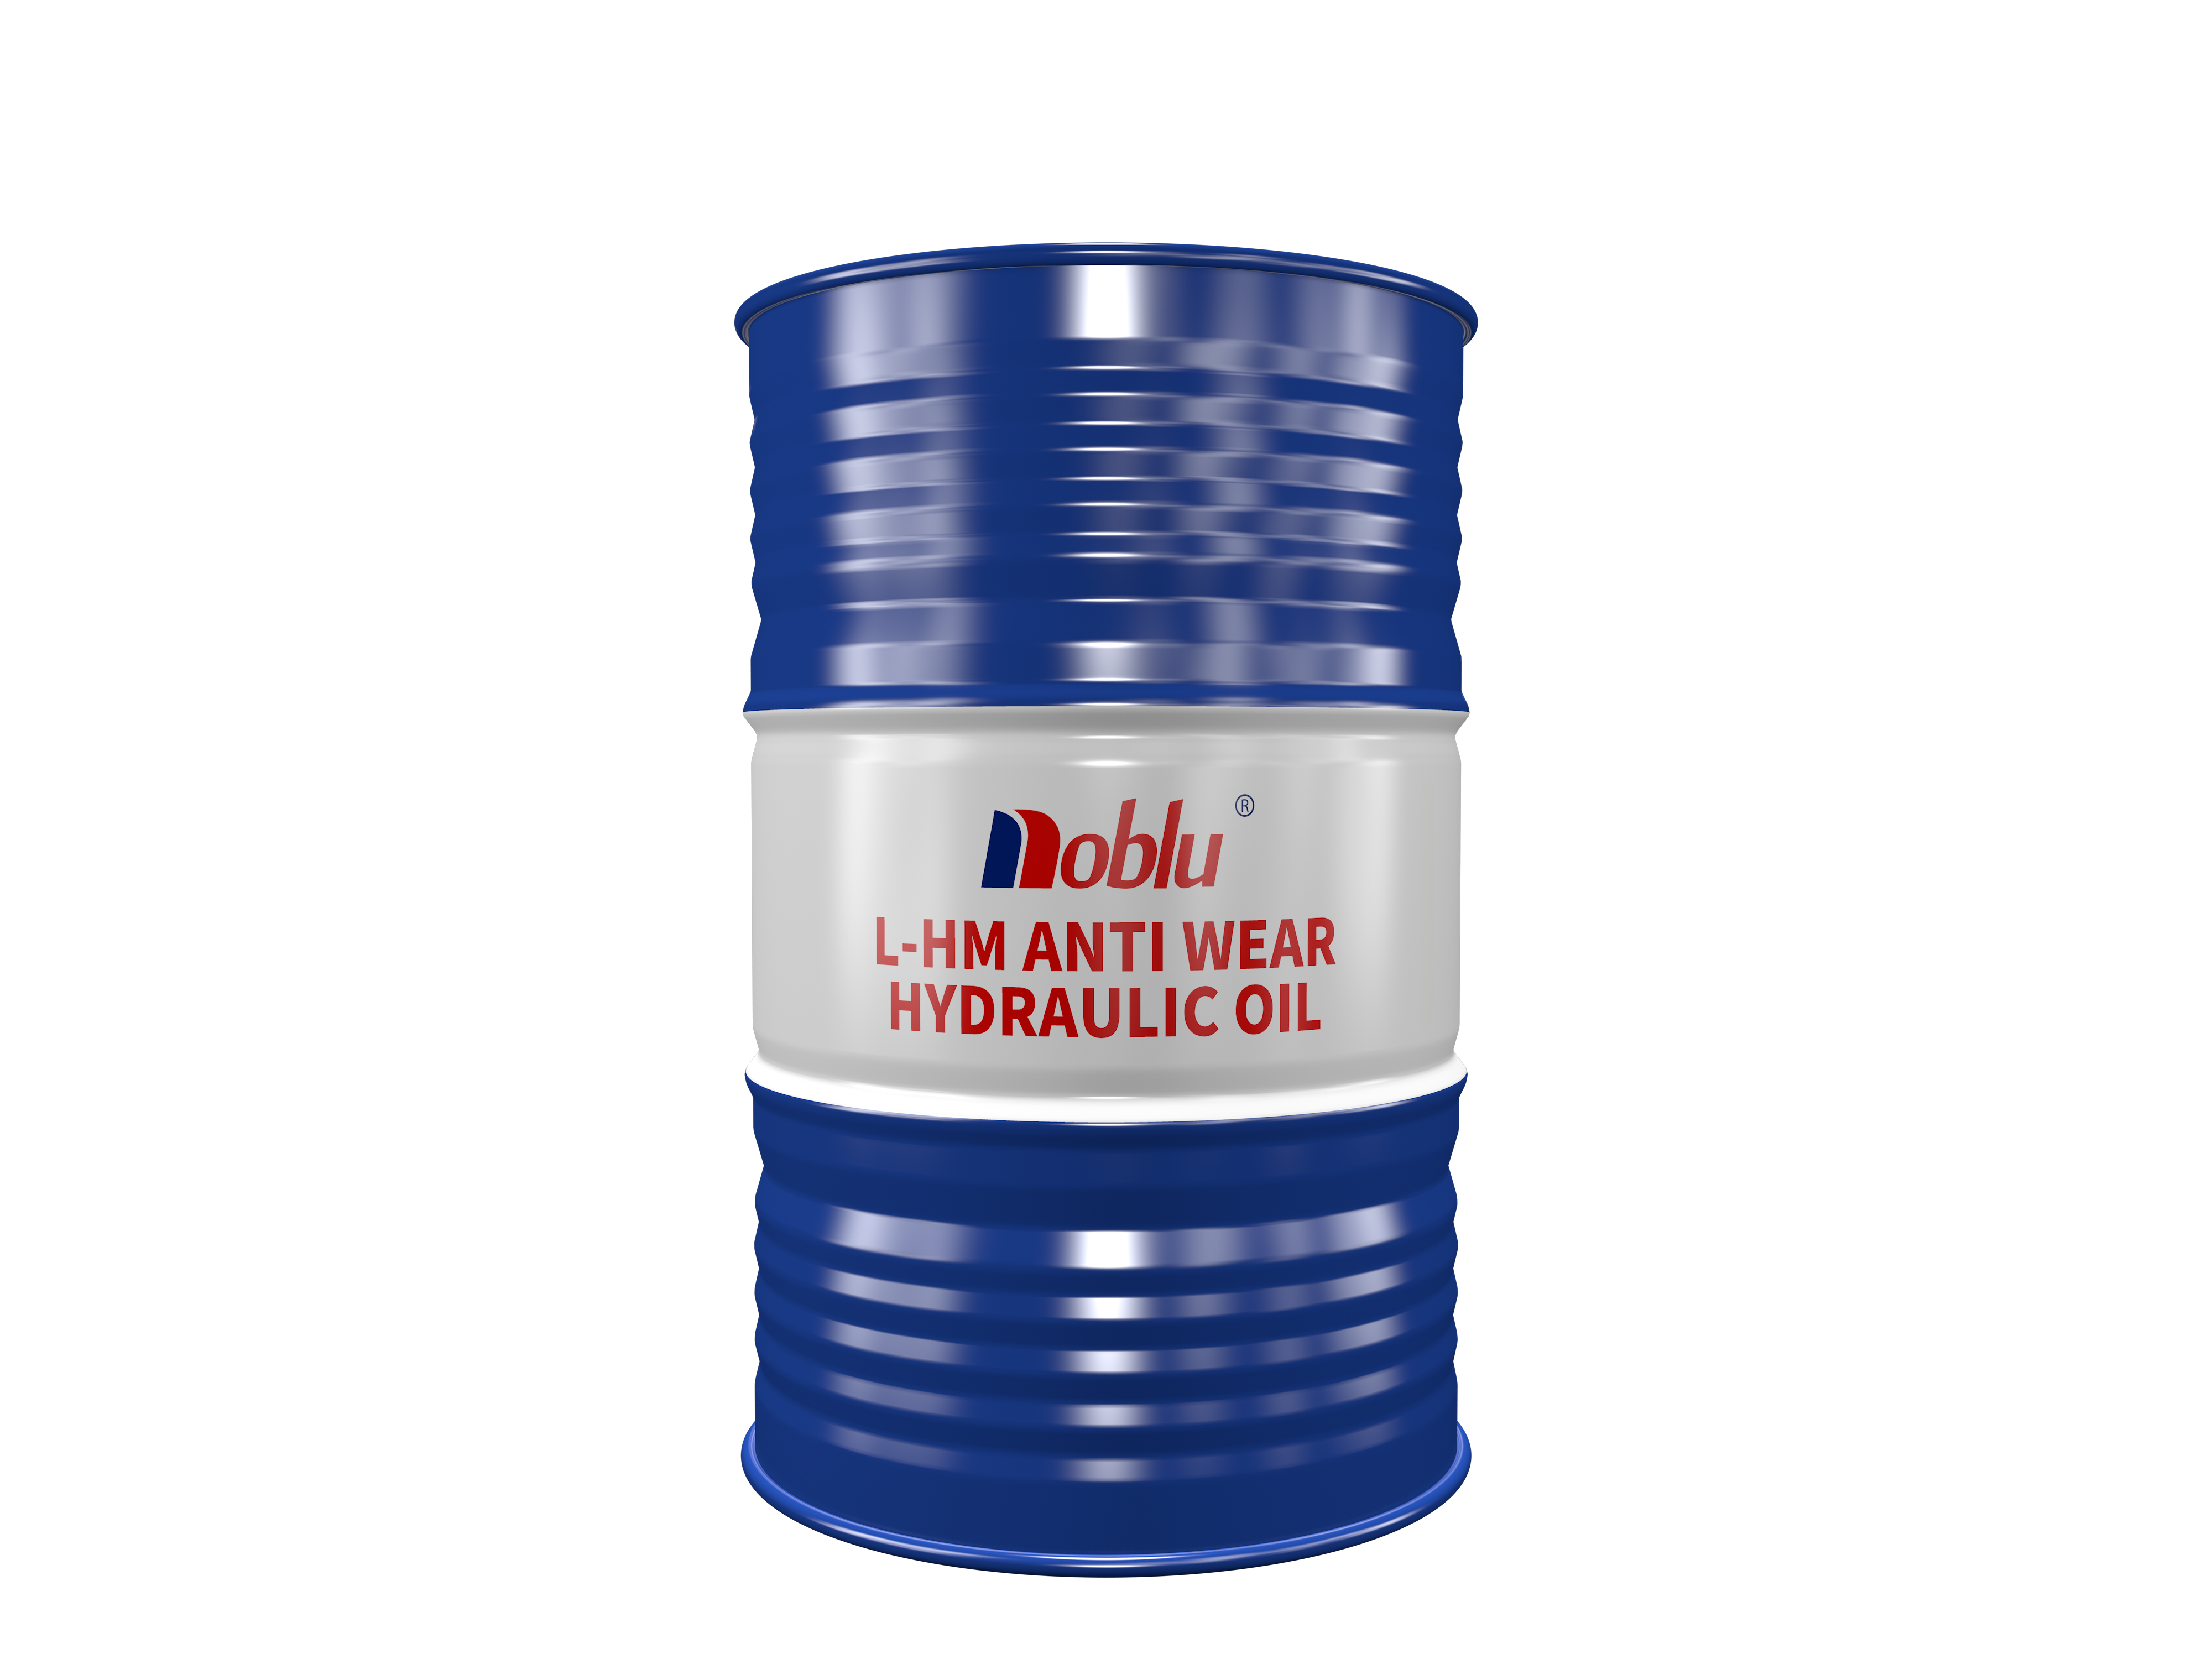 L-HM anti wear hydraulic oil